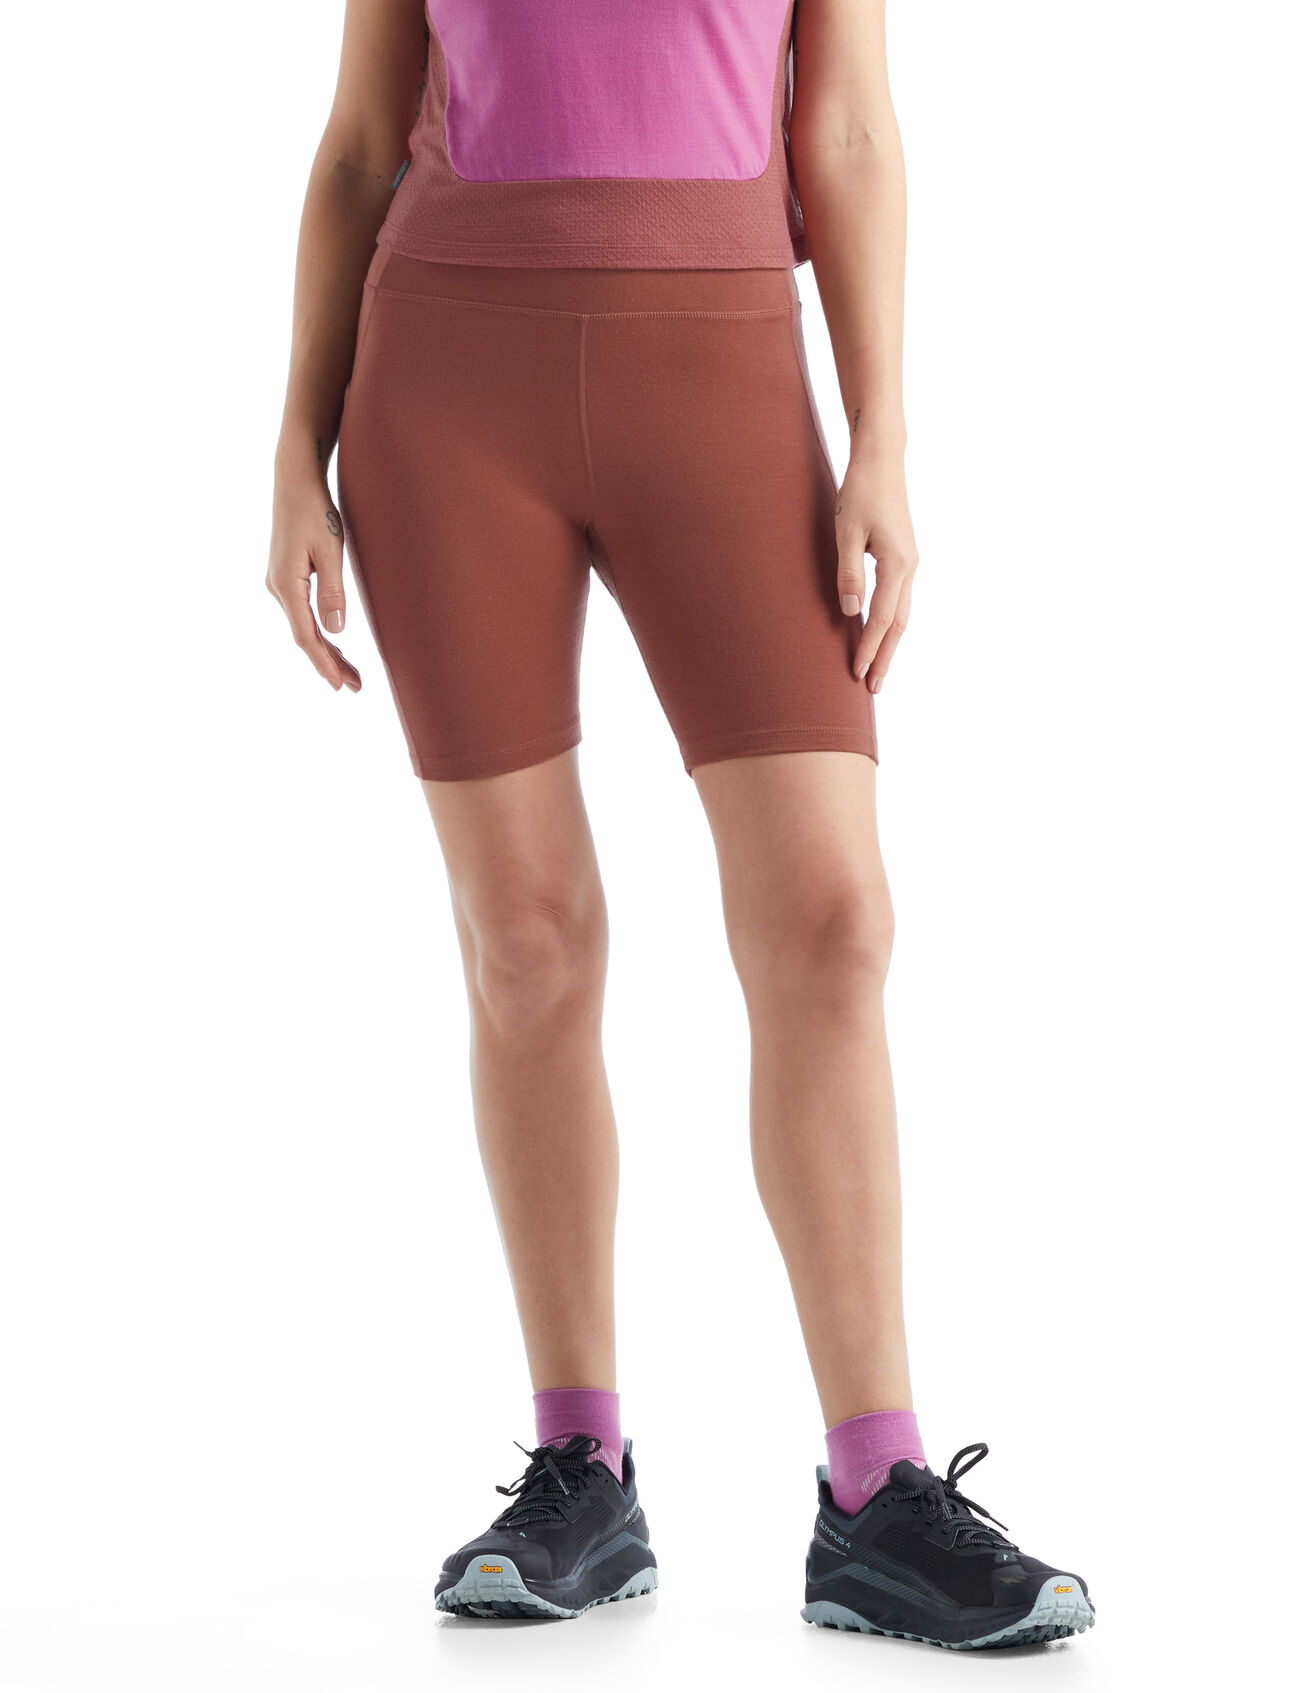 Dames Fastray korte broek met hoge taille van merinowol  De Fastray High Rise Shorts is een functionele, nauwsluitende korte broek waarin je actief bezig kunt zijn. De broek is gemaakt van een elastische merinowolmix met een hoge taille voor extra dekking. 